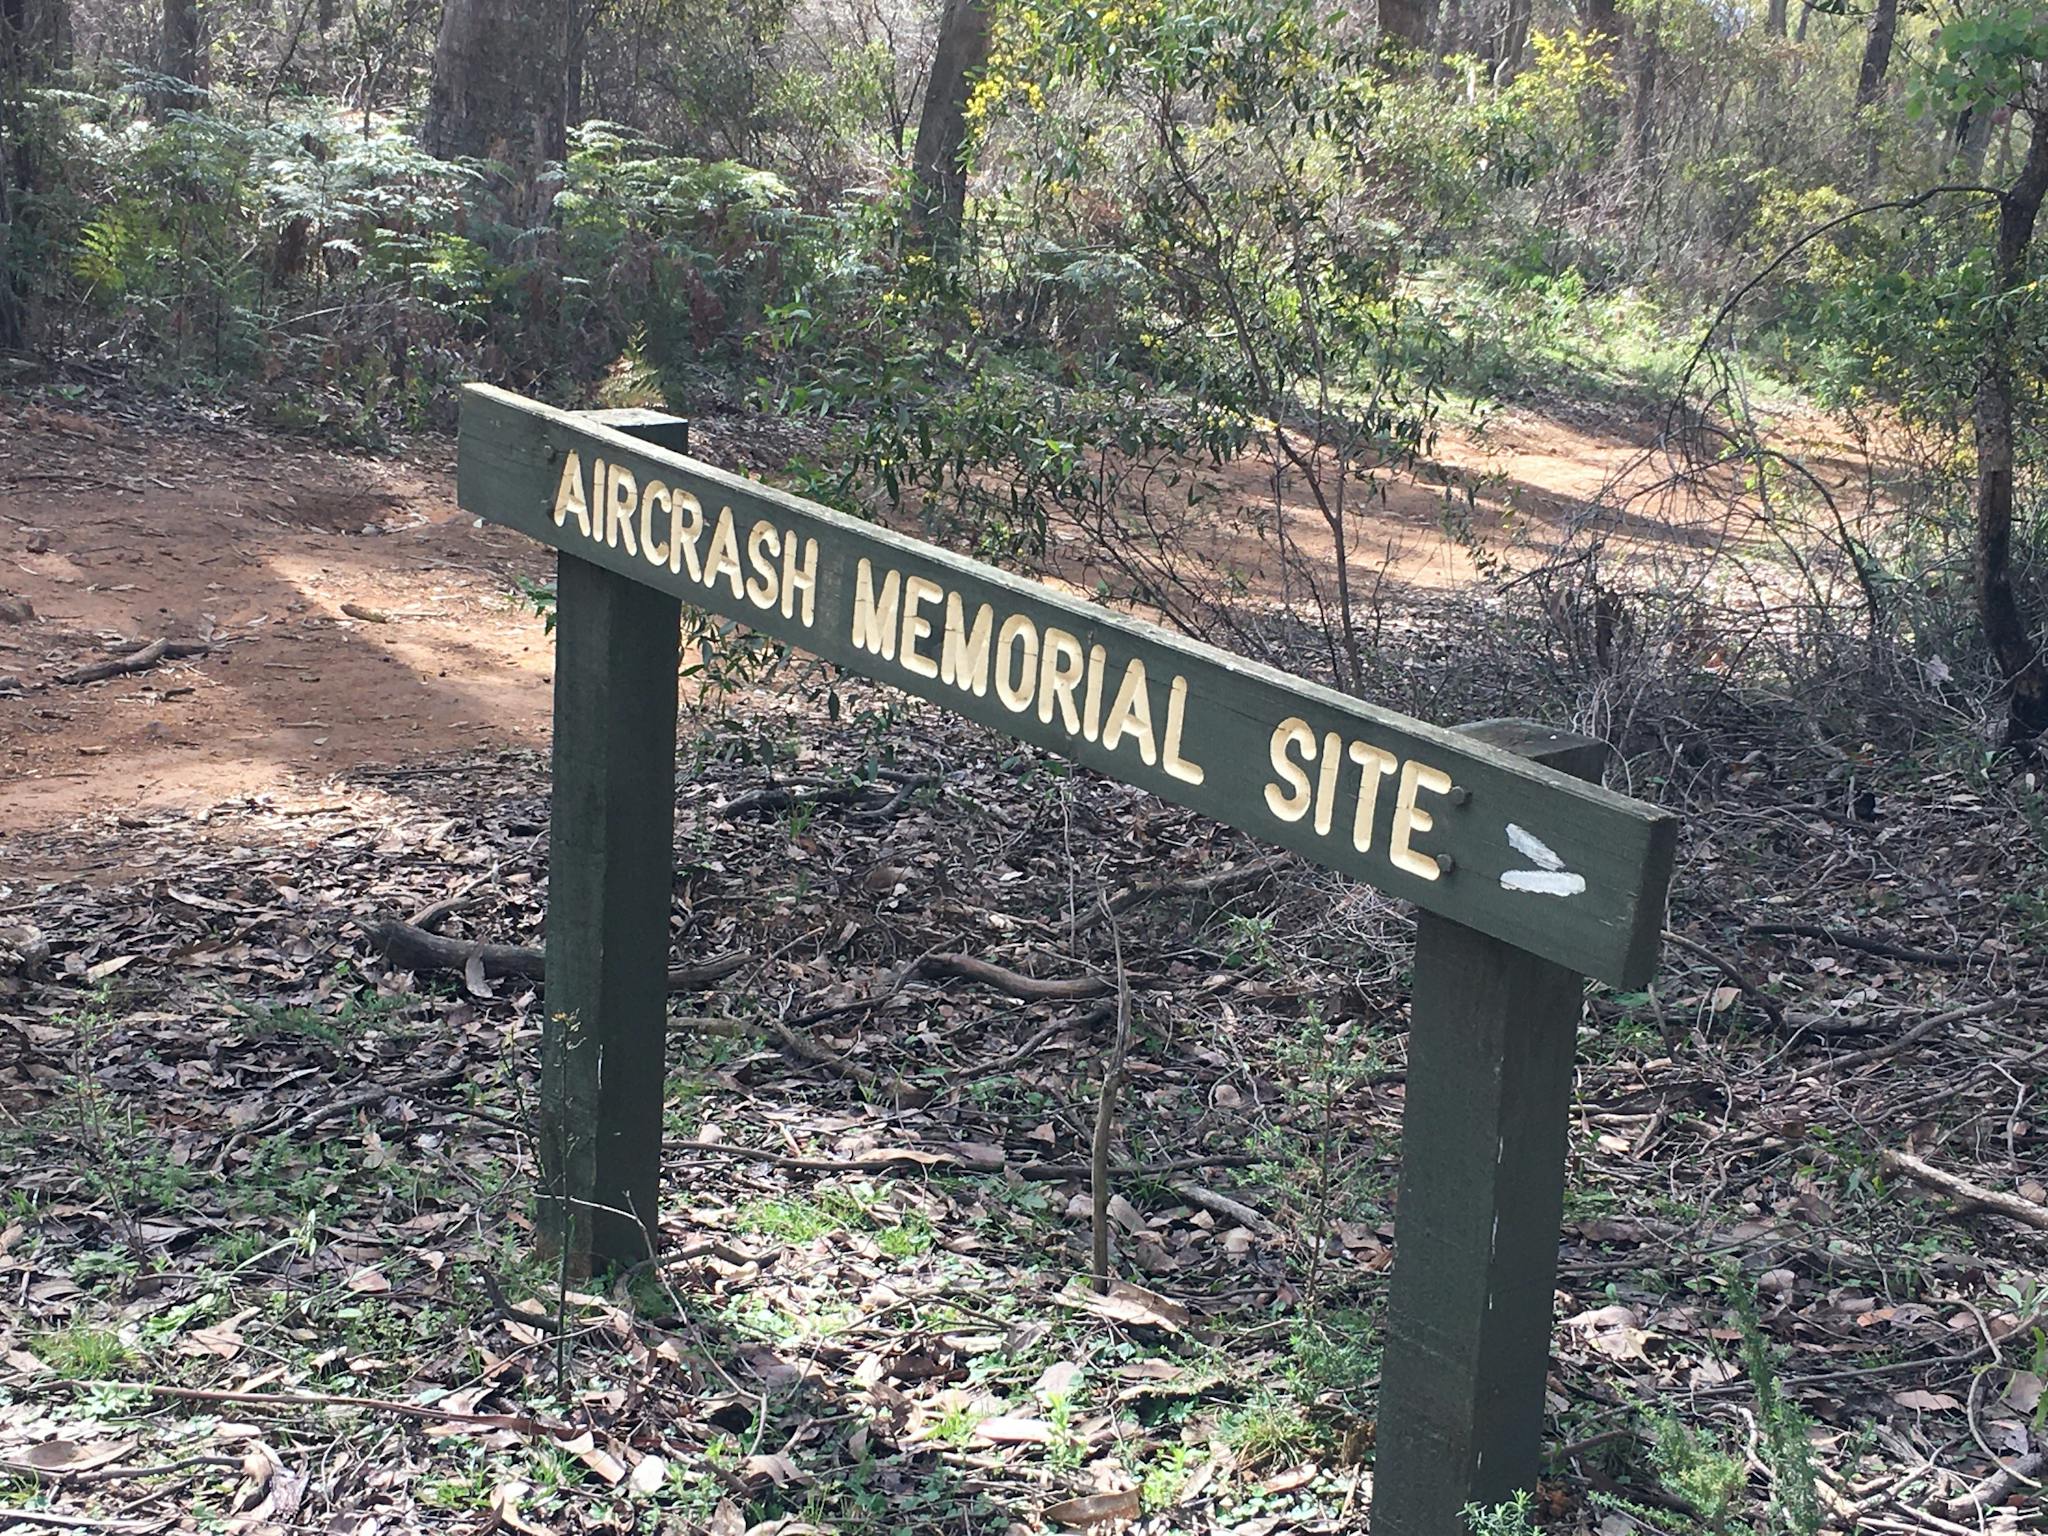 Memorial Site Signage